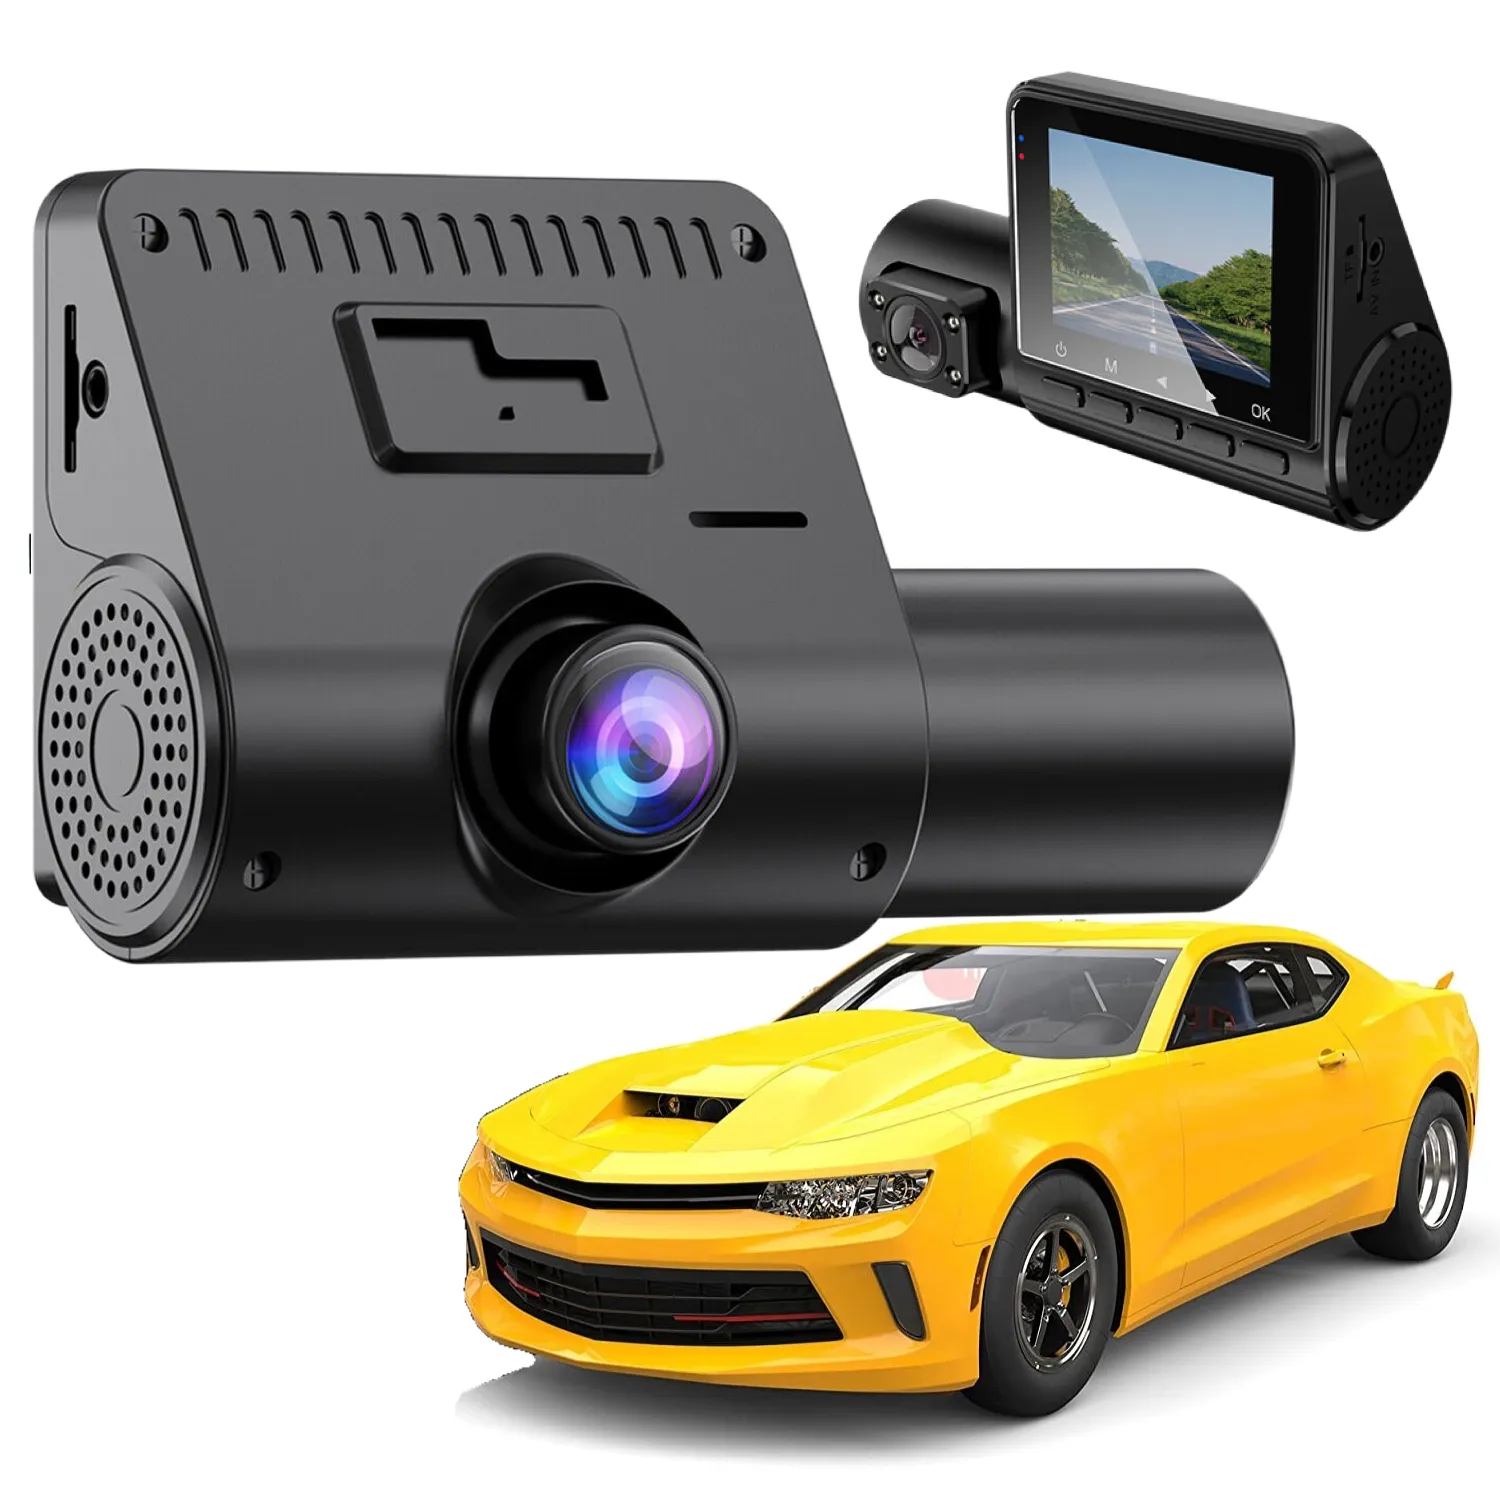 2,4-Zoll-IPS-Bildschirm Auto Black Box 3 Kameras Video recorder Für Auto Corolla Dash Cam Vorder-und Innenspiegel Rückfahr kamera